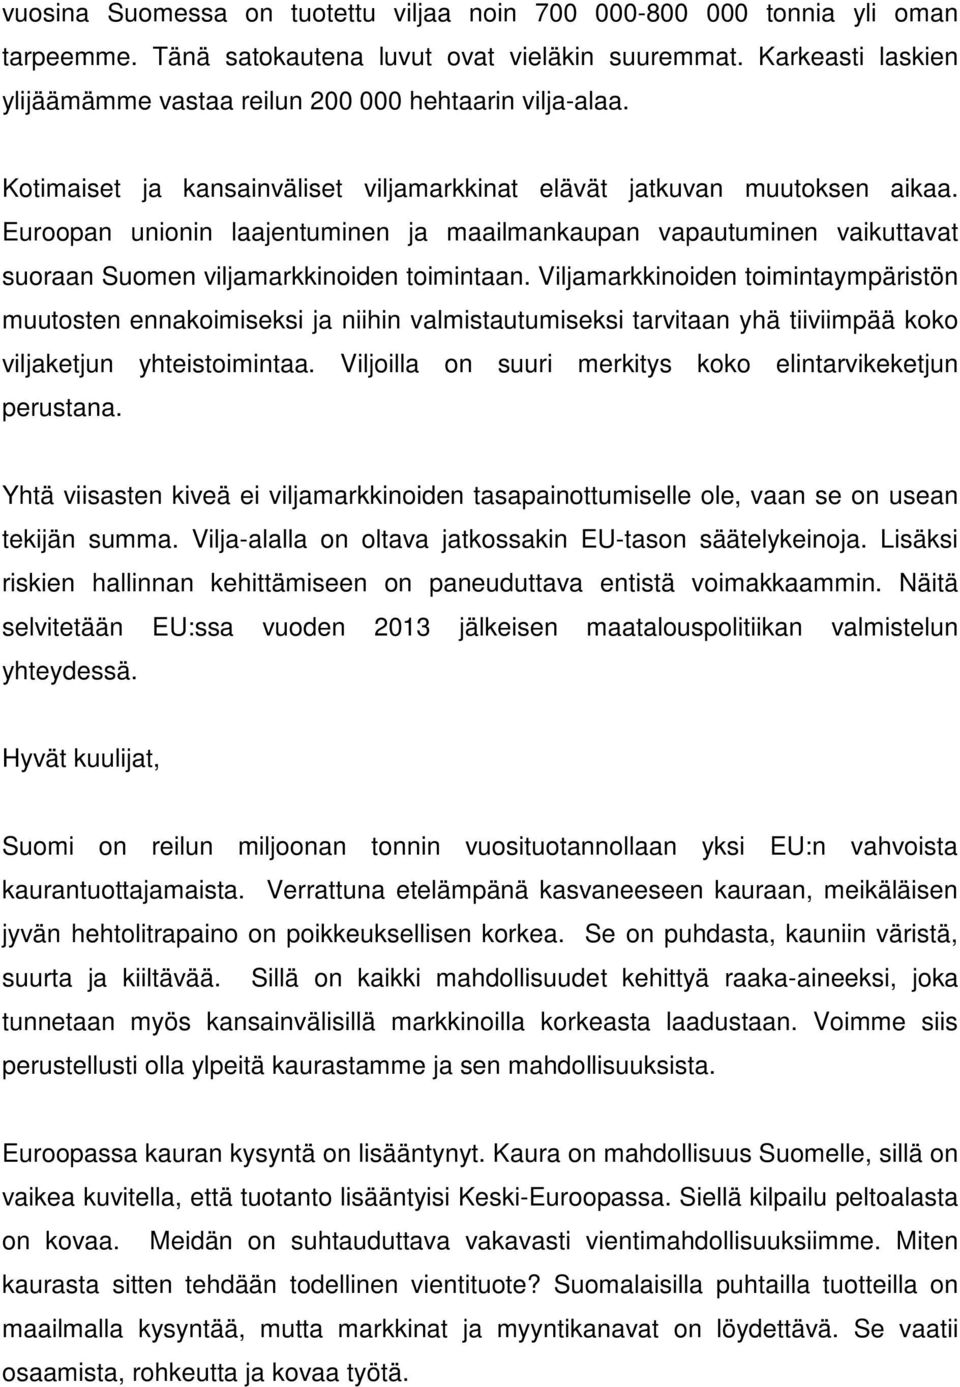 Euroopan unionin laajentuminen ja maailmankaupan vapautuminen vaikuttavat suoraan Suomen viljamarkkinoiden toimintaan.